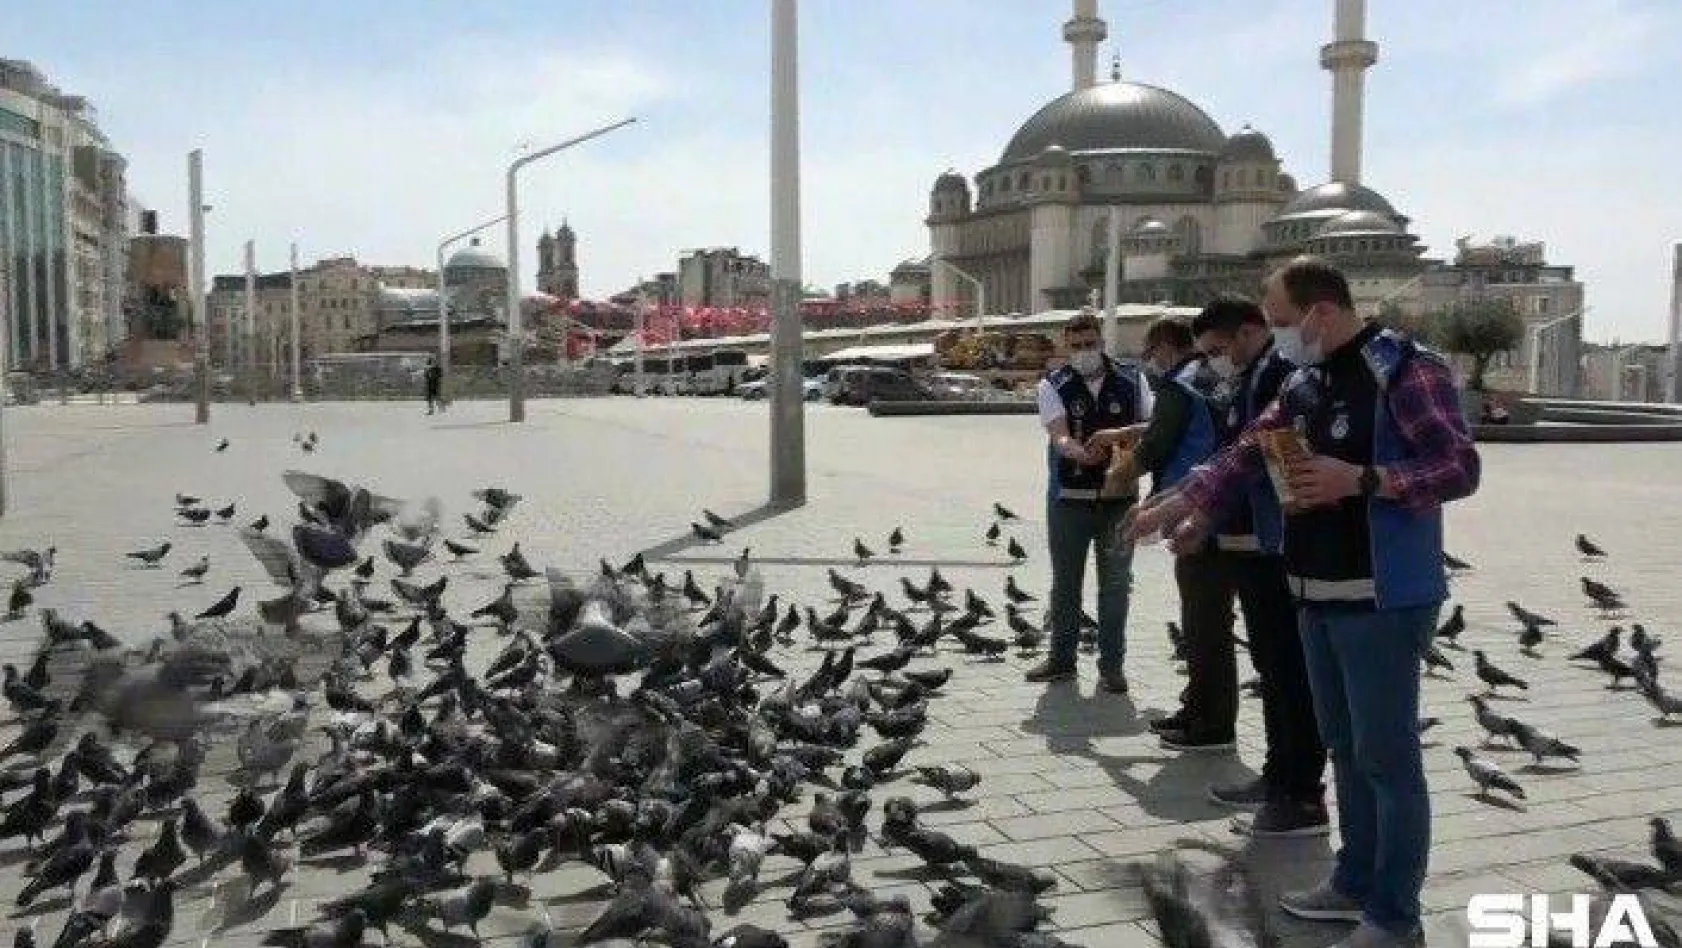 Taksim meydanı 1 Mayısta kuşlara kaldı